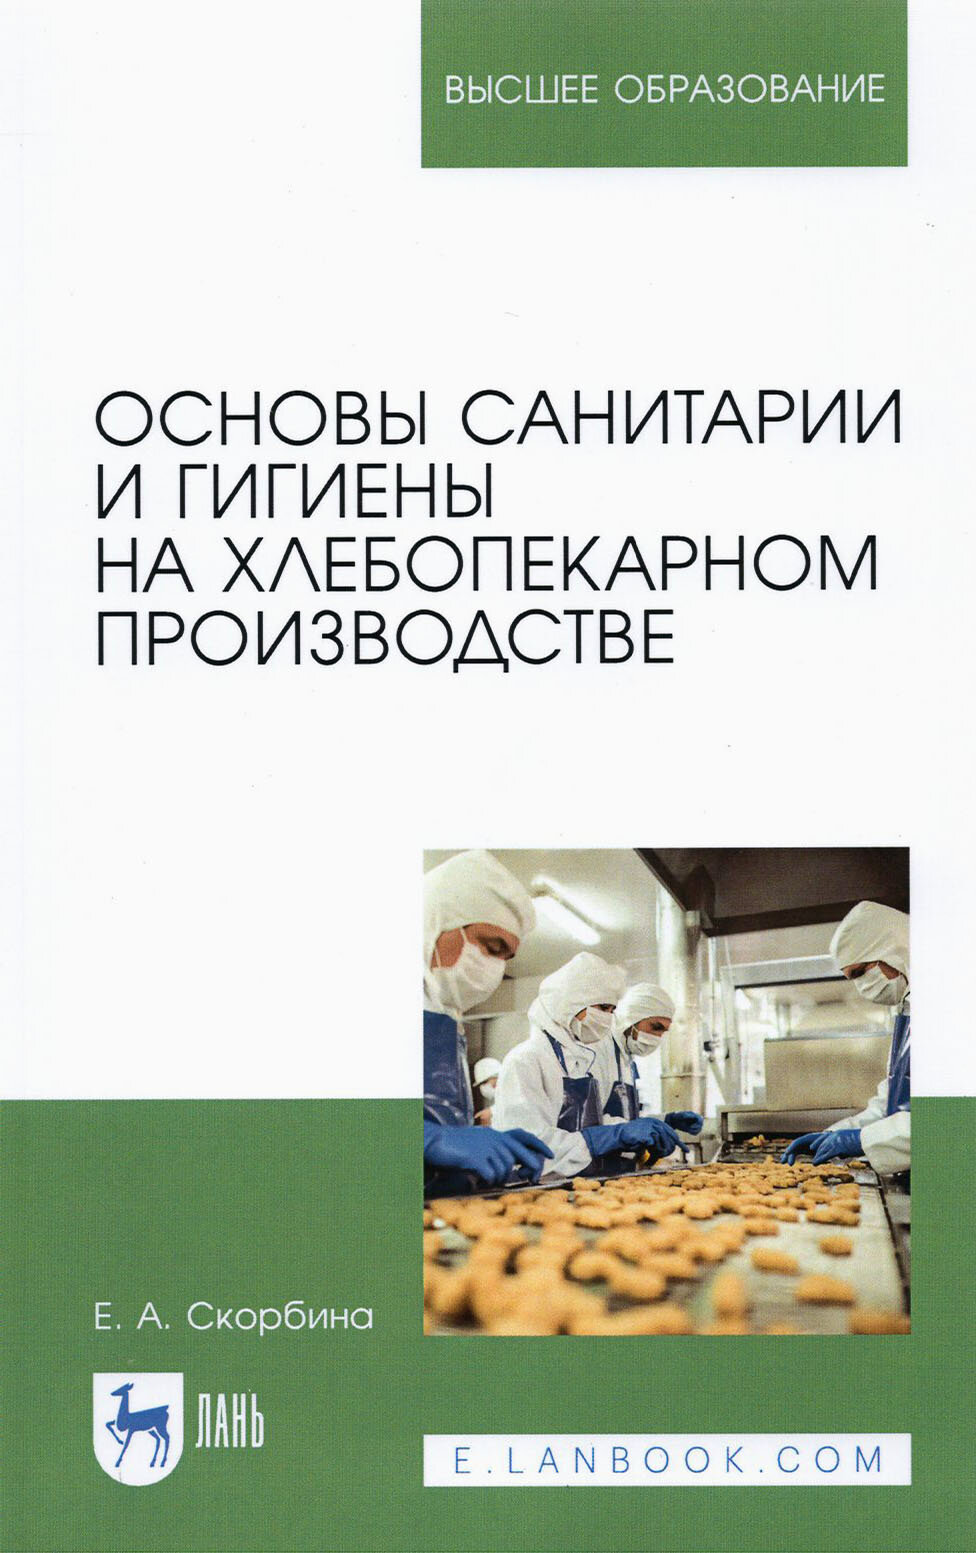 Основы санитарии и гигиены на хлебопекарном производстве - фото №2